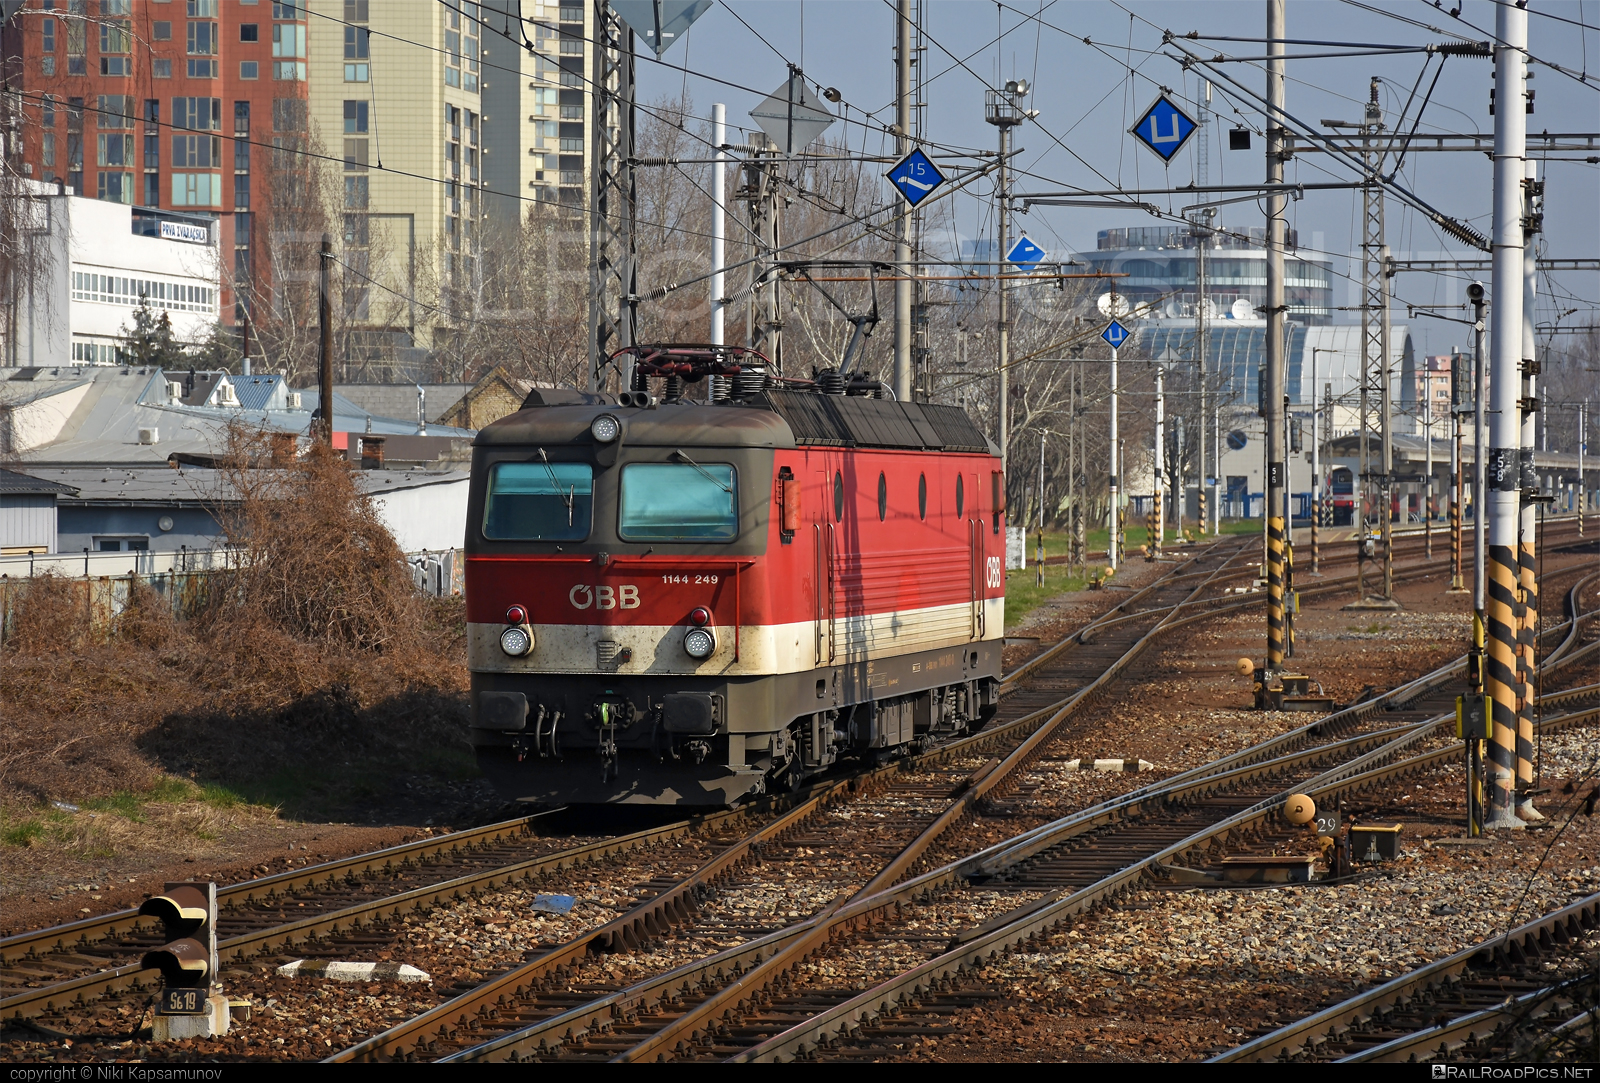 SGP 1144 - 1144 249 operated by Rail Cargo Austria AG #obb #obb1144 #obbClass1144 #osterreichischebundesbahnen #rcw #sgp #sgp1144 #simmeringgrazpauker